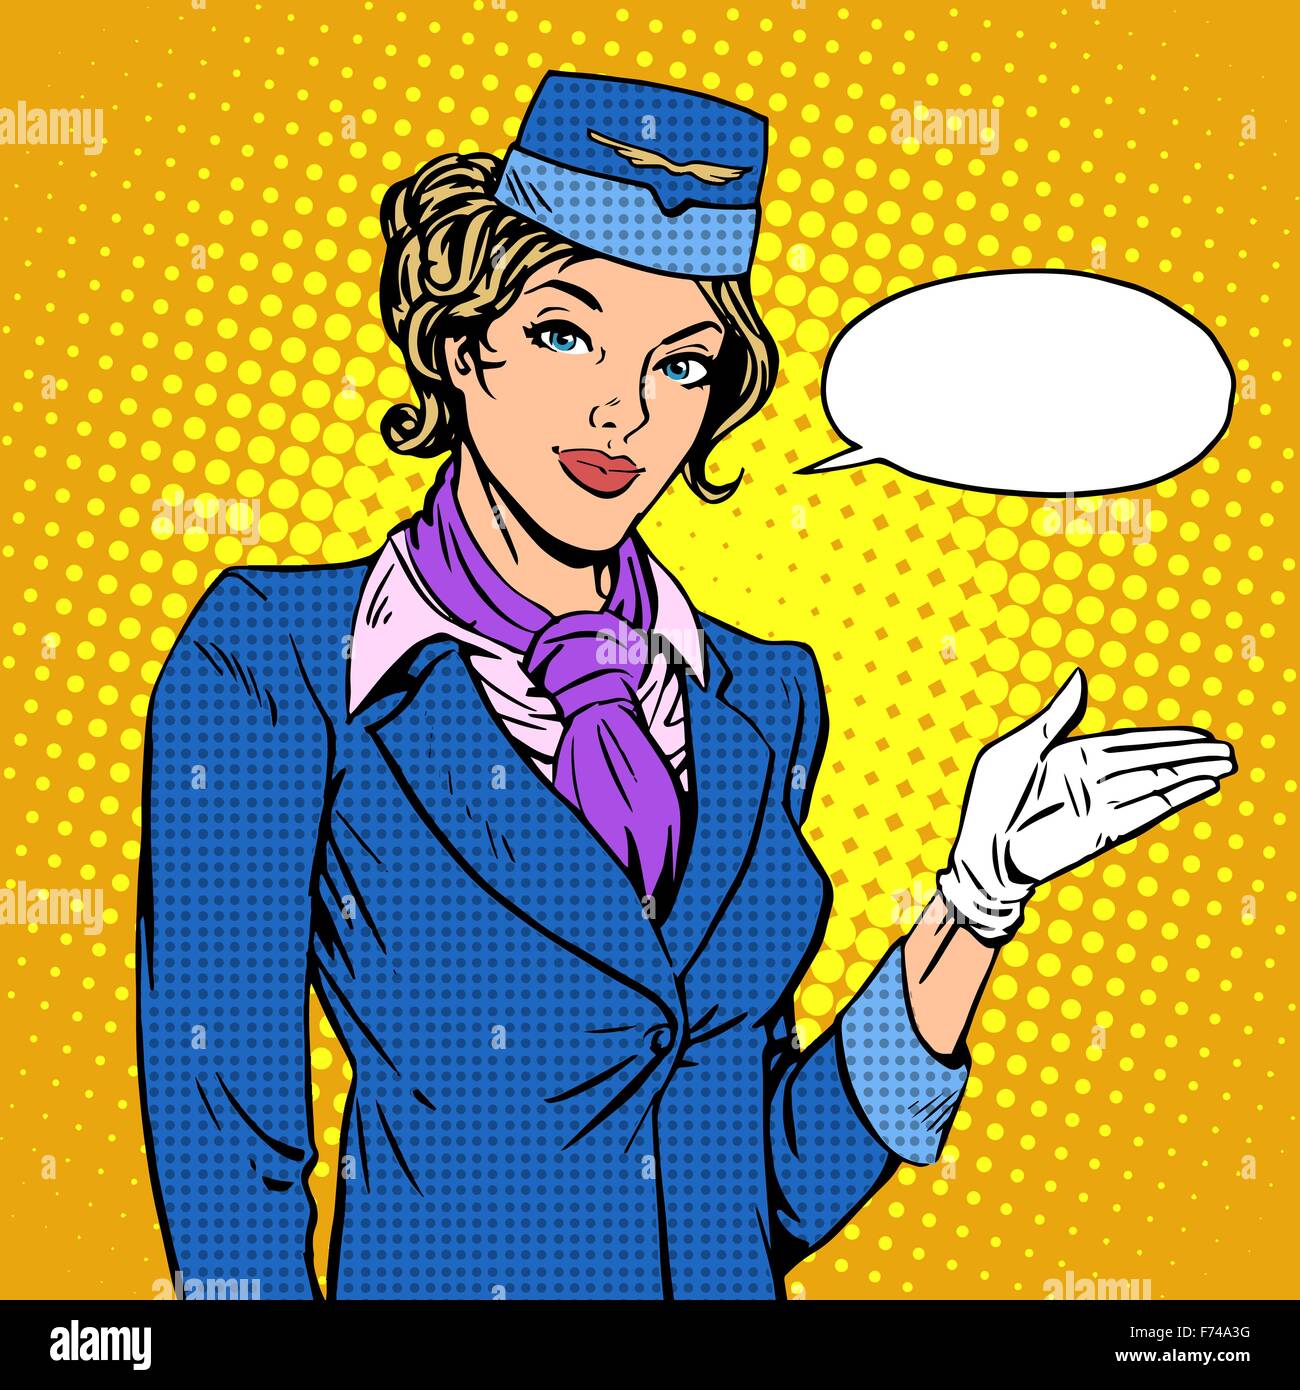 Hôtesse de l'airline vous invite à bord Illustration de Vecteur